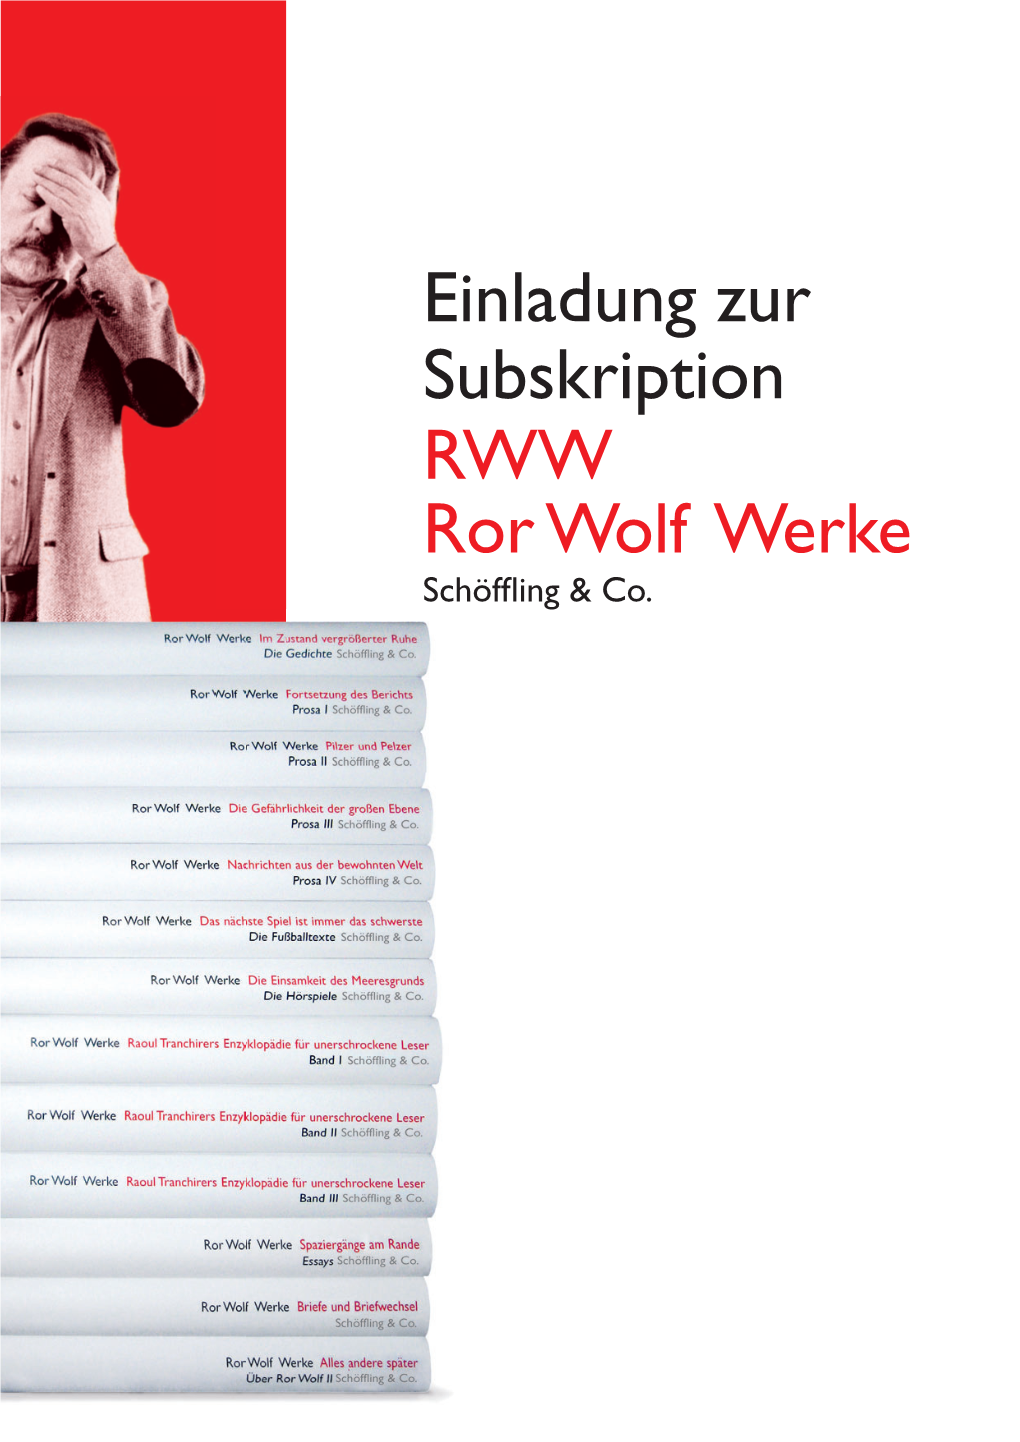 Einladung Zur Subskription RWW Ror Wolf Werke Schöfﬂ Ing & Co